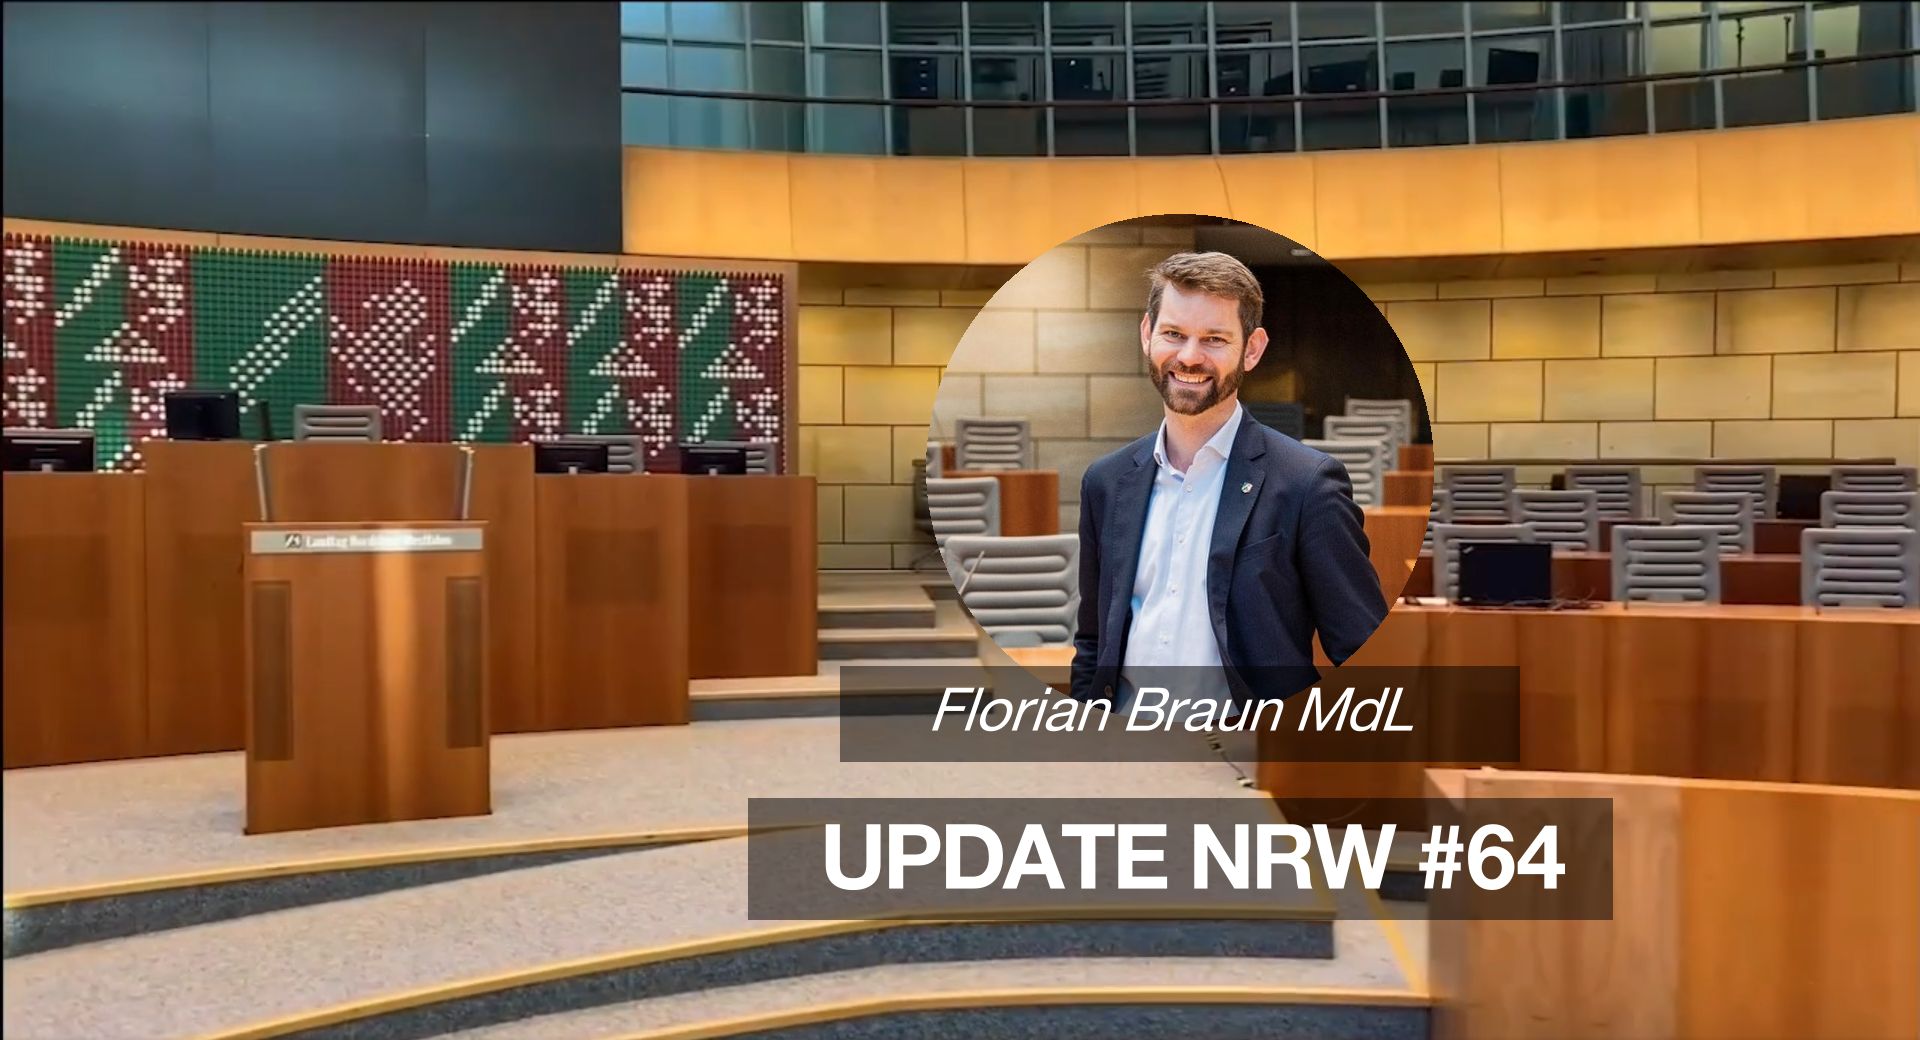 Florian Braun MdL: Update NRW #64